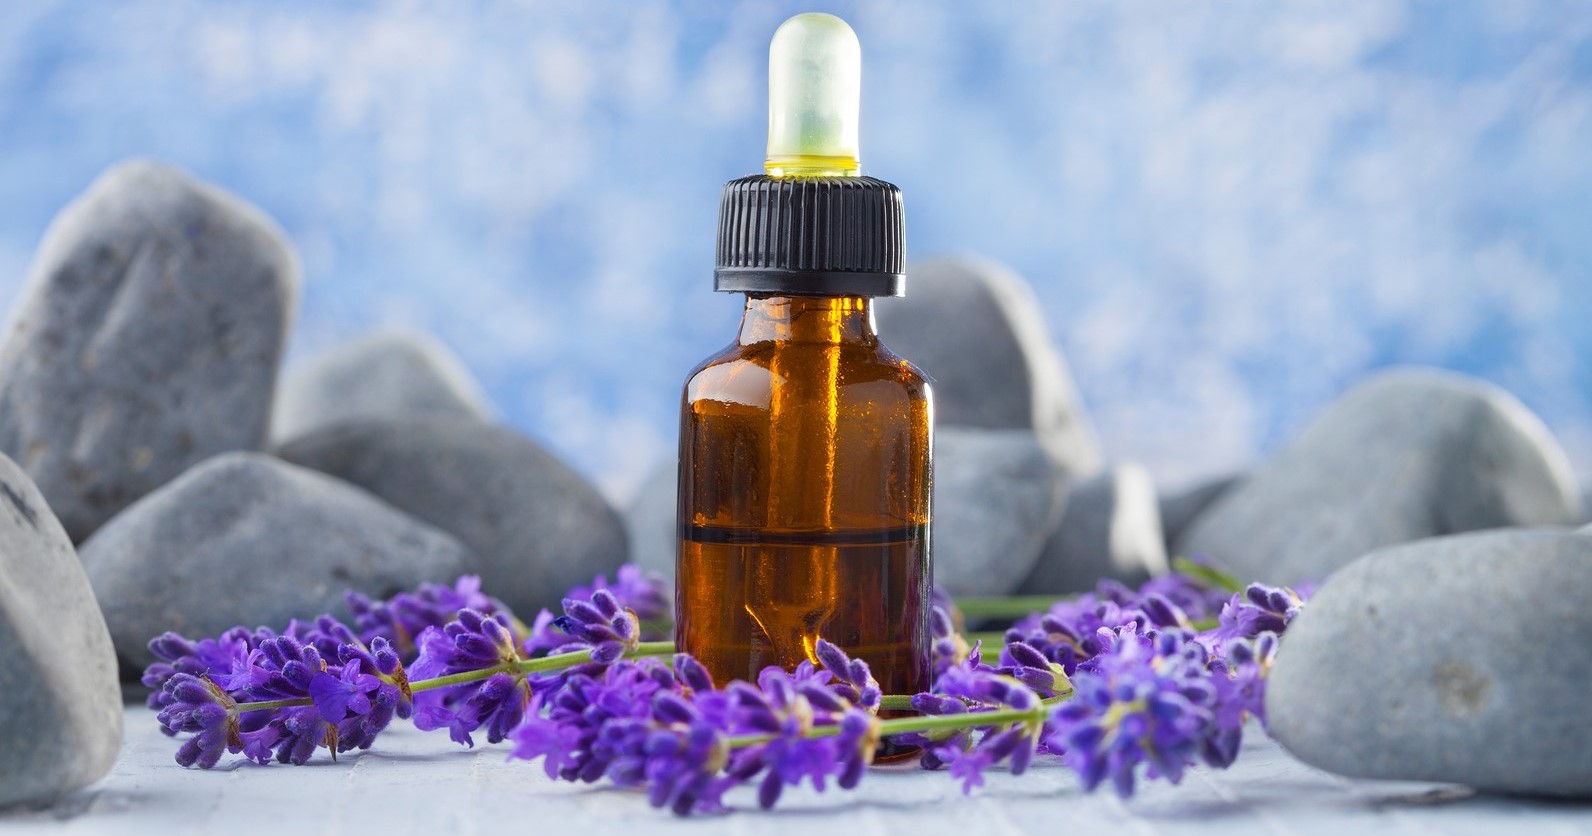 Levanduľa je jeden z najobľúbenejších aromaterapeutických olejov